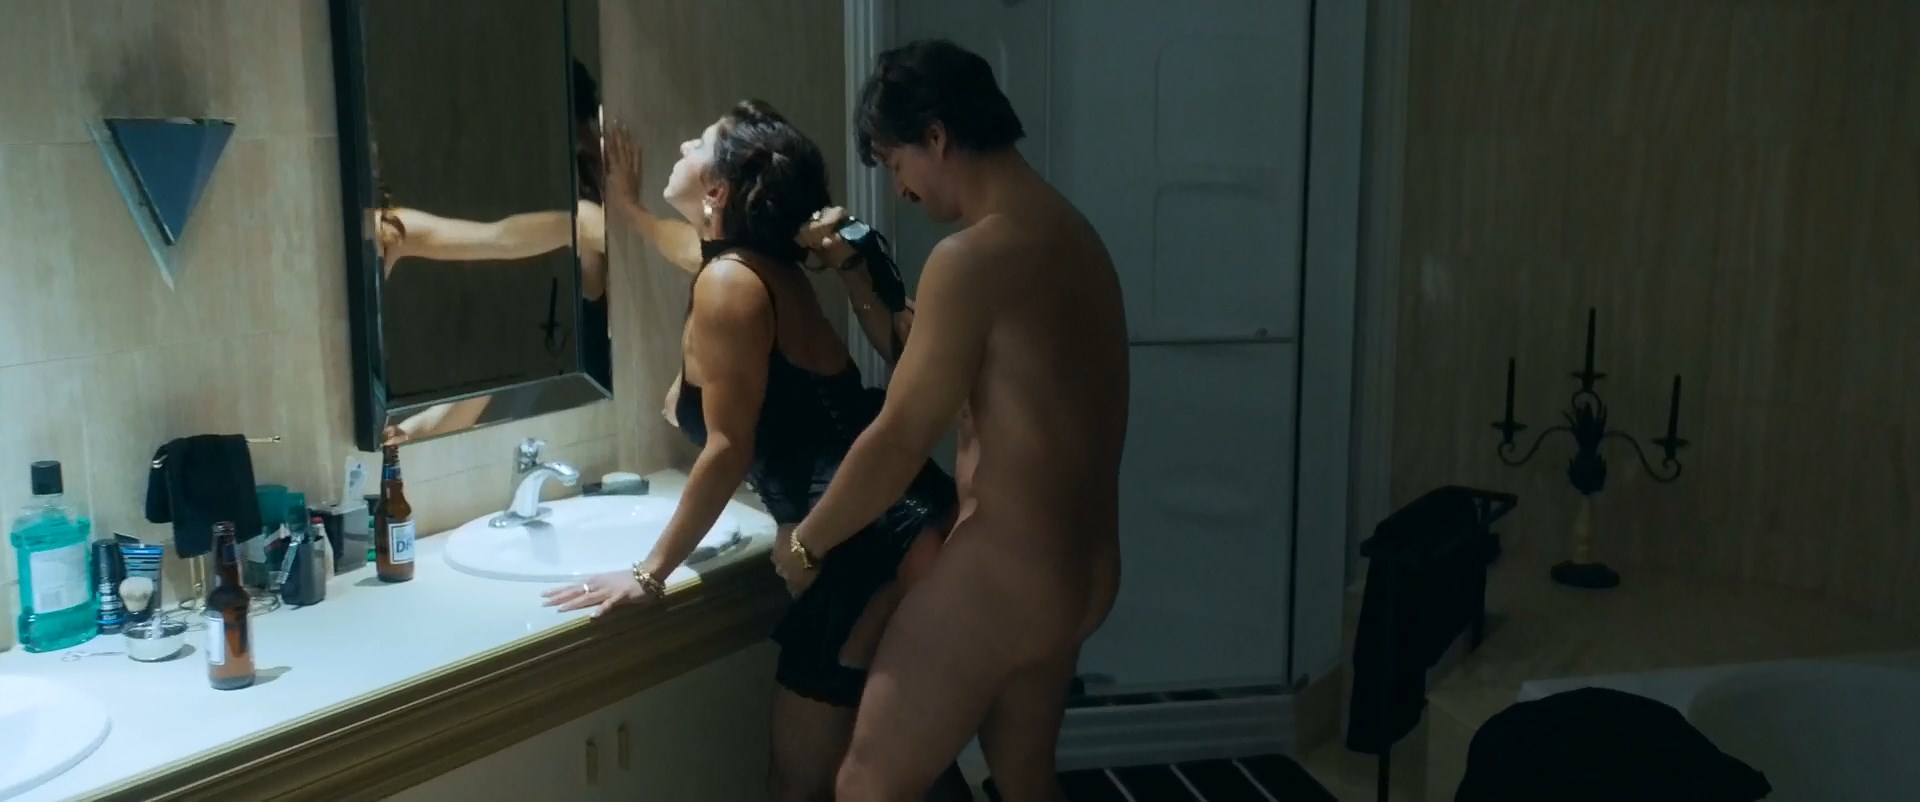 Cristina Rosato has nude scenes in the movie “Mafia Inc” which was released...